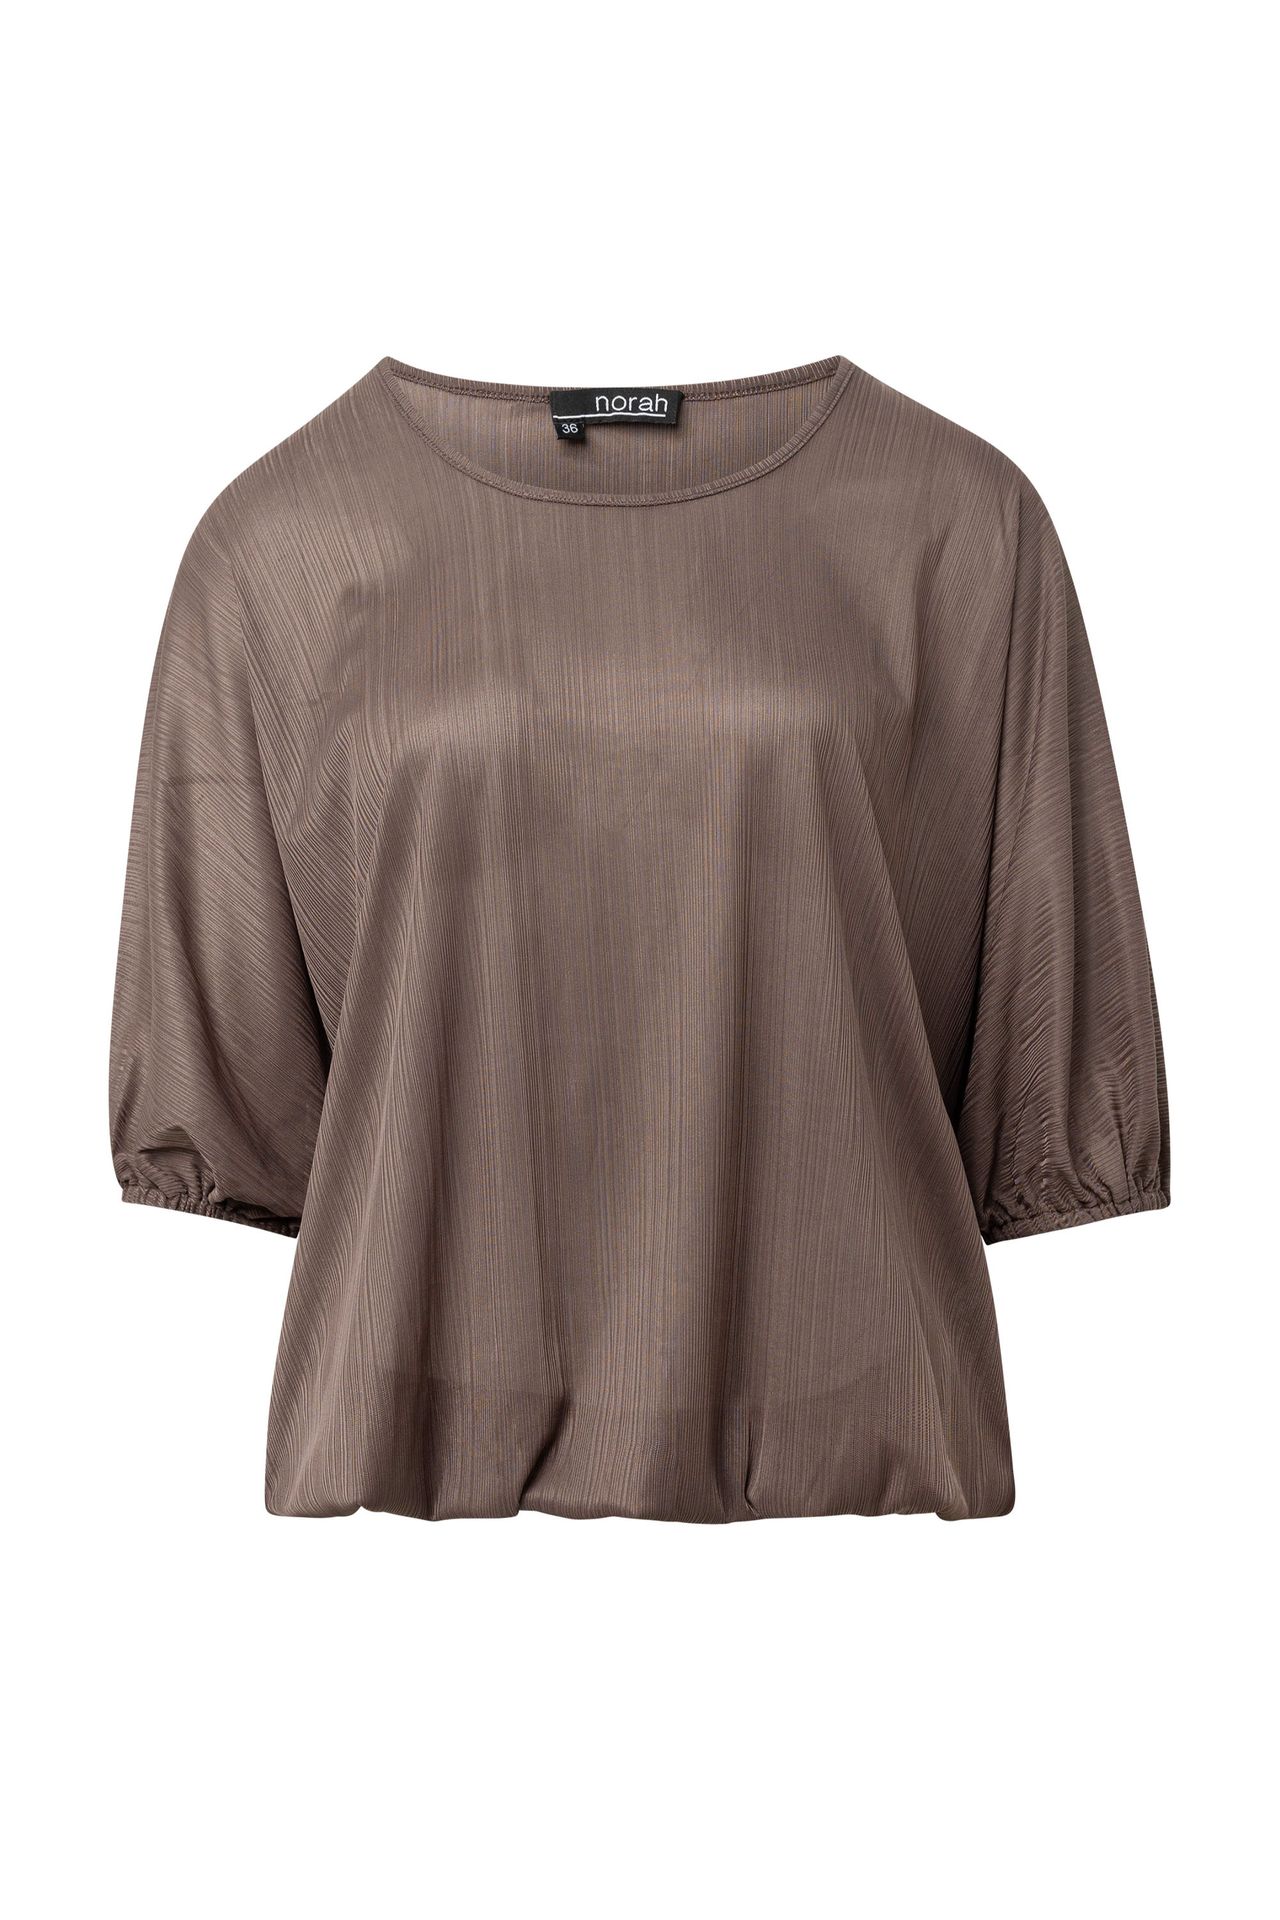  Bruin shirt taupe 214115-204-44